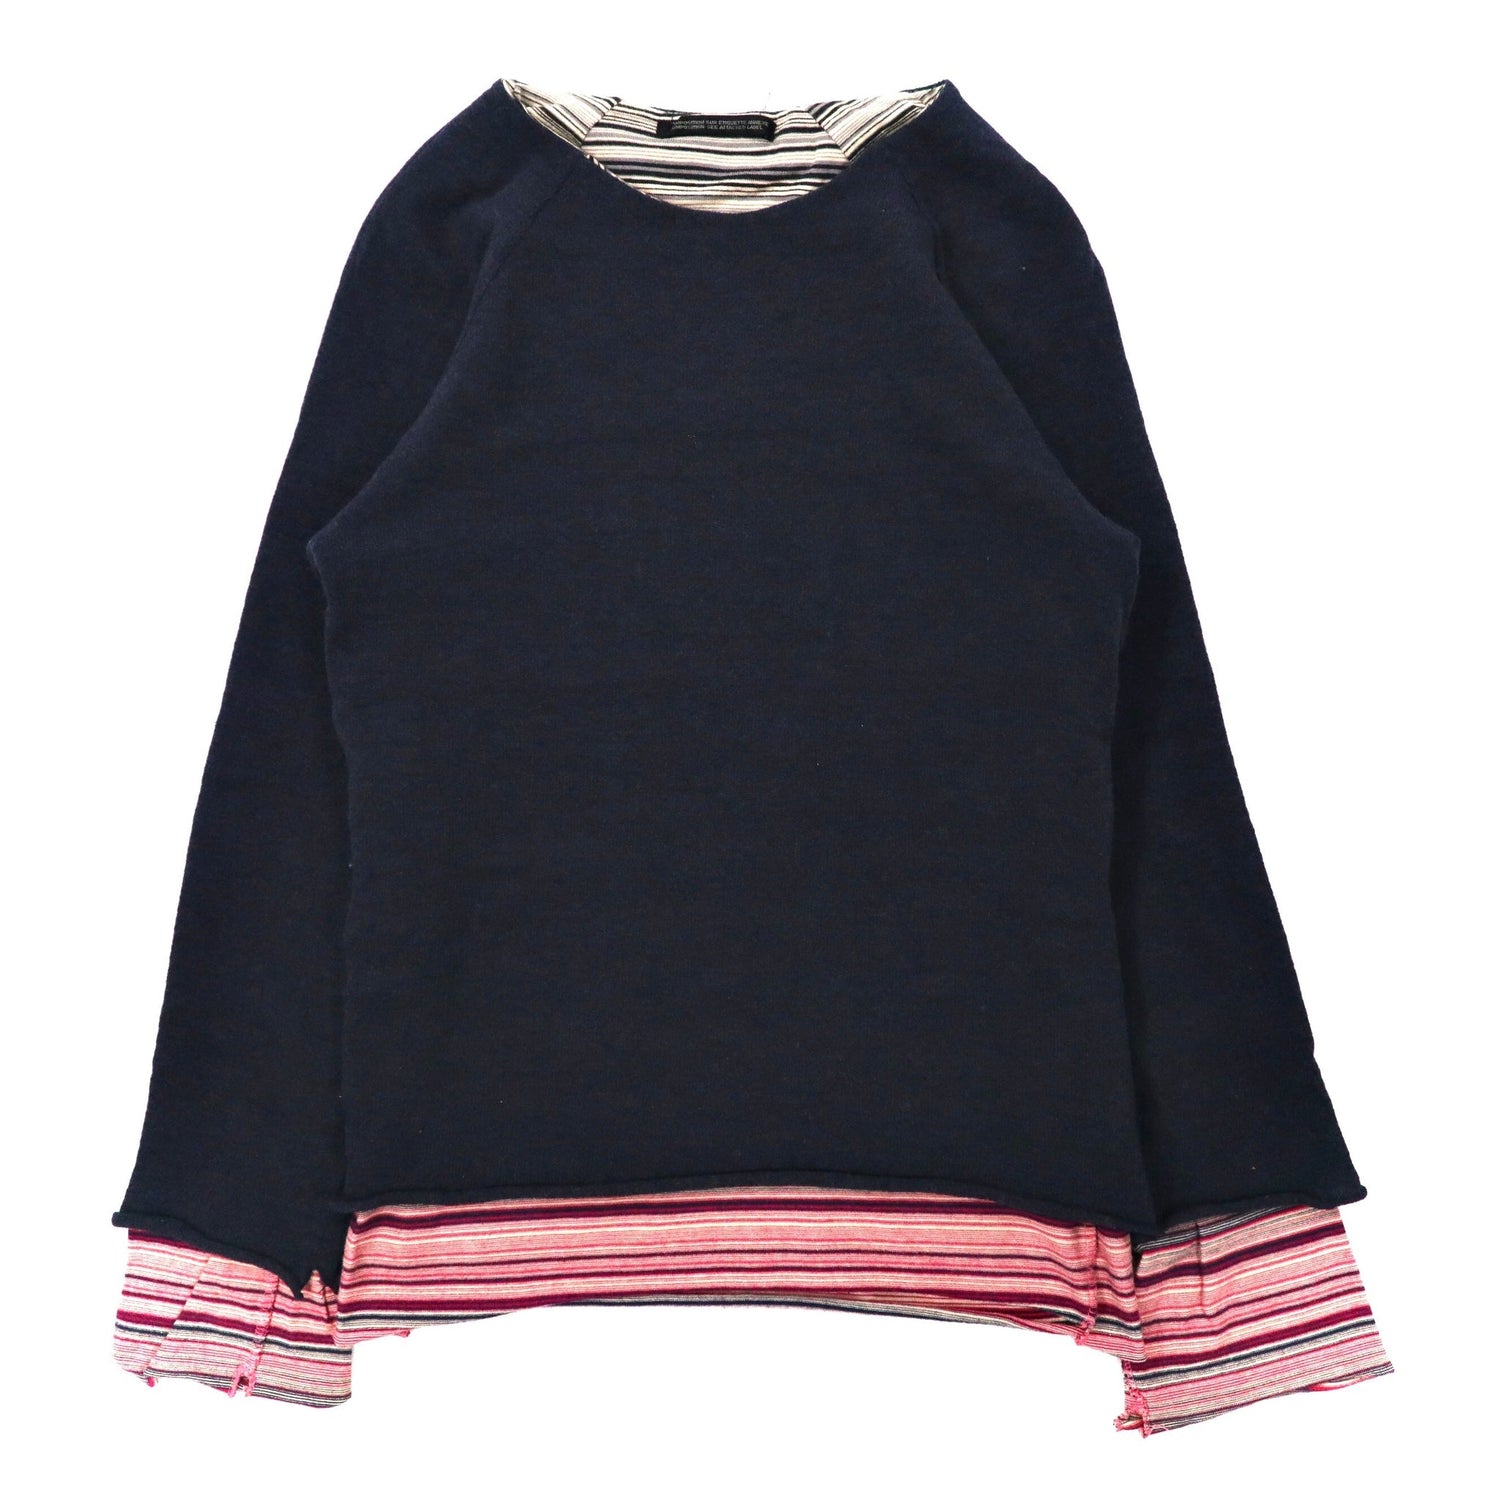 Y's YOHJI YAMAMOTO Layered Knit Sweater 3 Navy Wool YT-T06-850